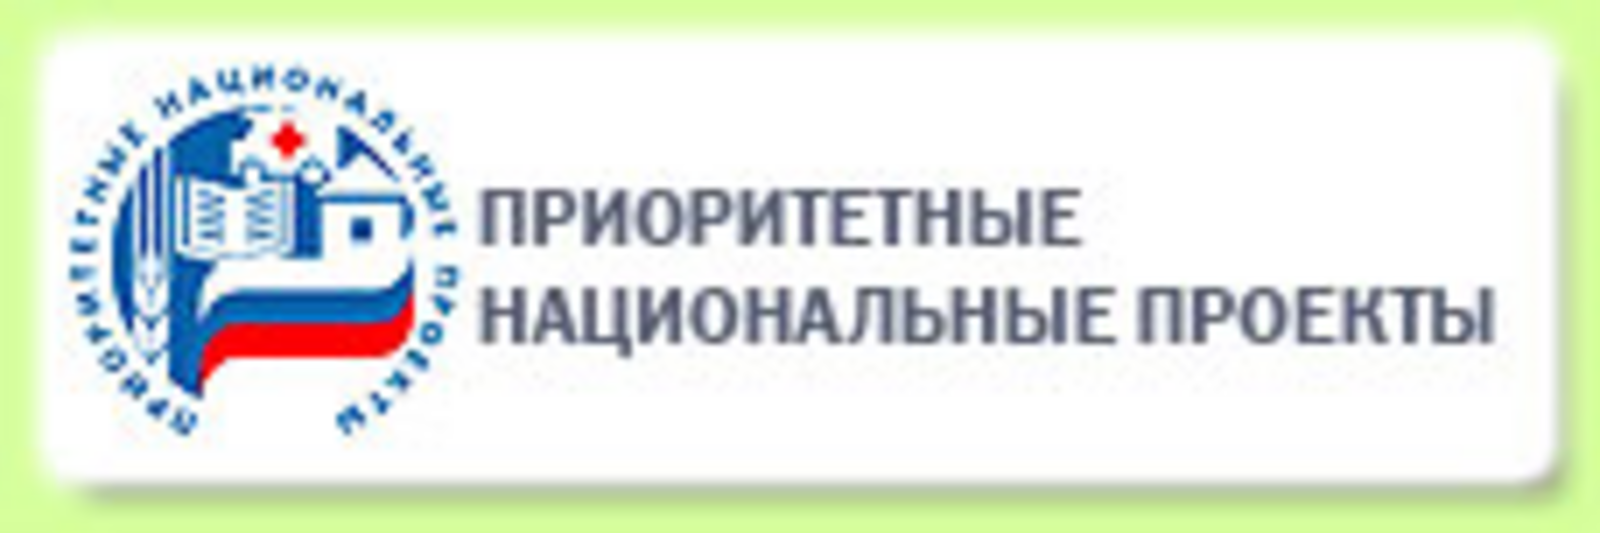 В Башкортостане участником нацпроекта «Производительность труда» стал производитель кресел